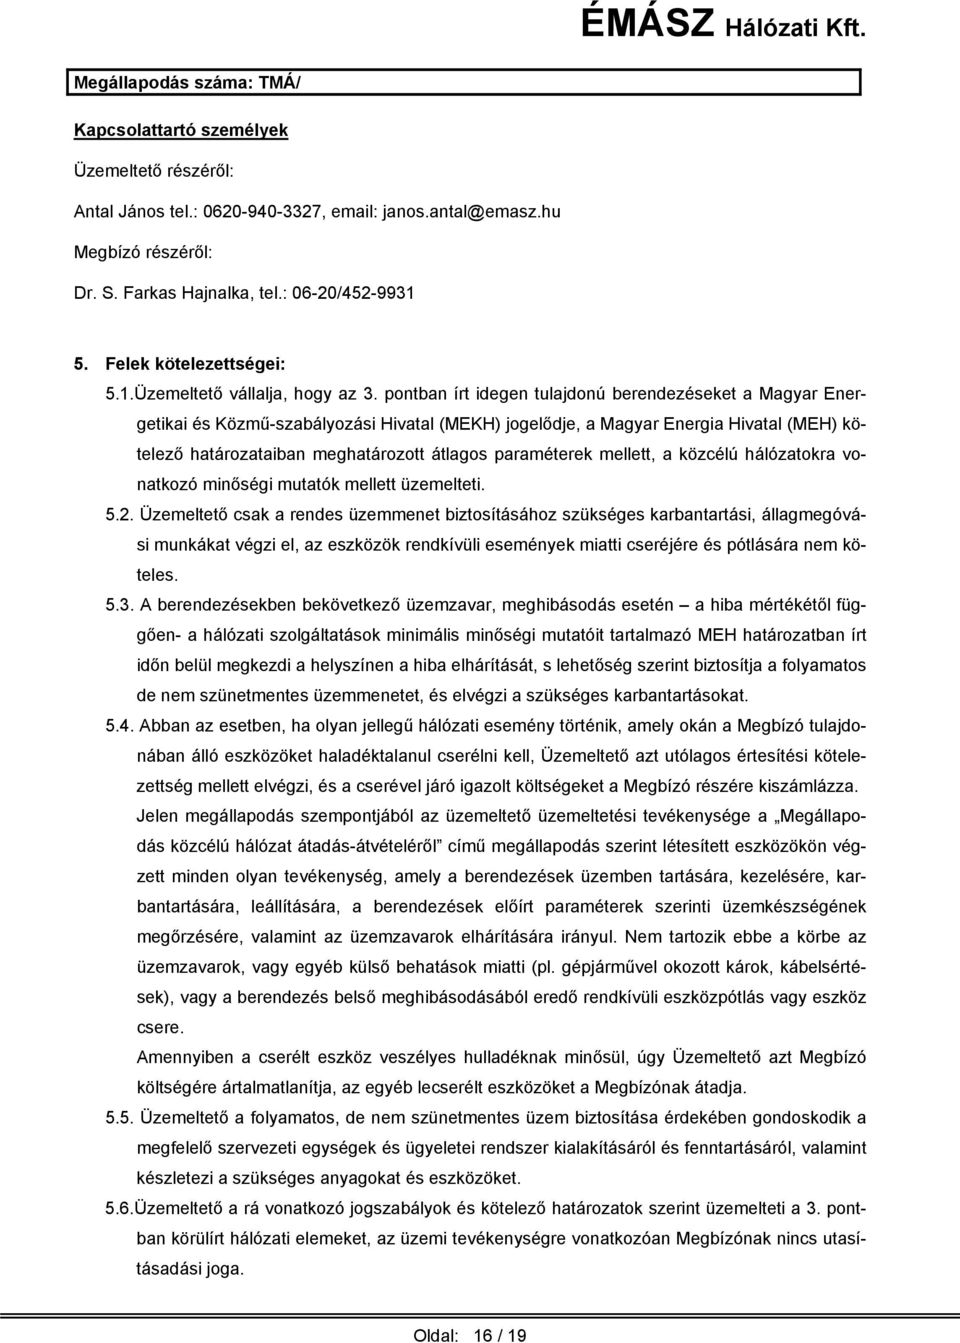 pontban írt idegen tulajdonú berendezéseket a Magyar Energetikai és Közmű-szabályozási Hivatal (MEKH) jogelődje, a Magyar Energia Hivatal (MEH) kötelező határozataiban meghatározott átlagos